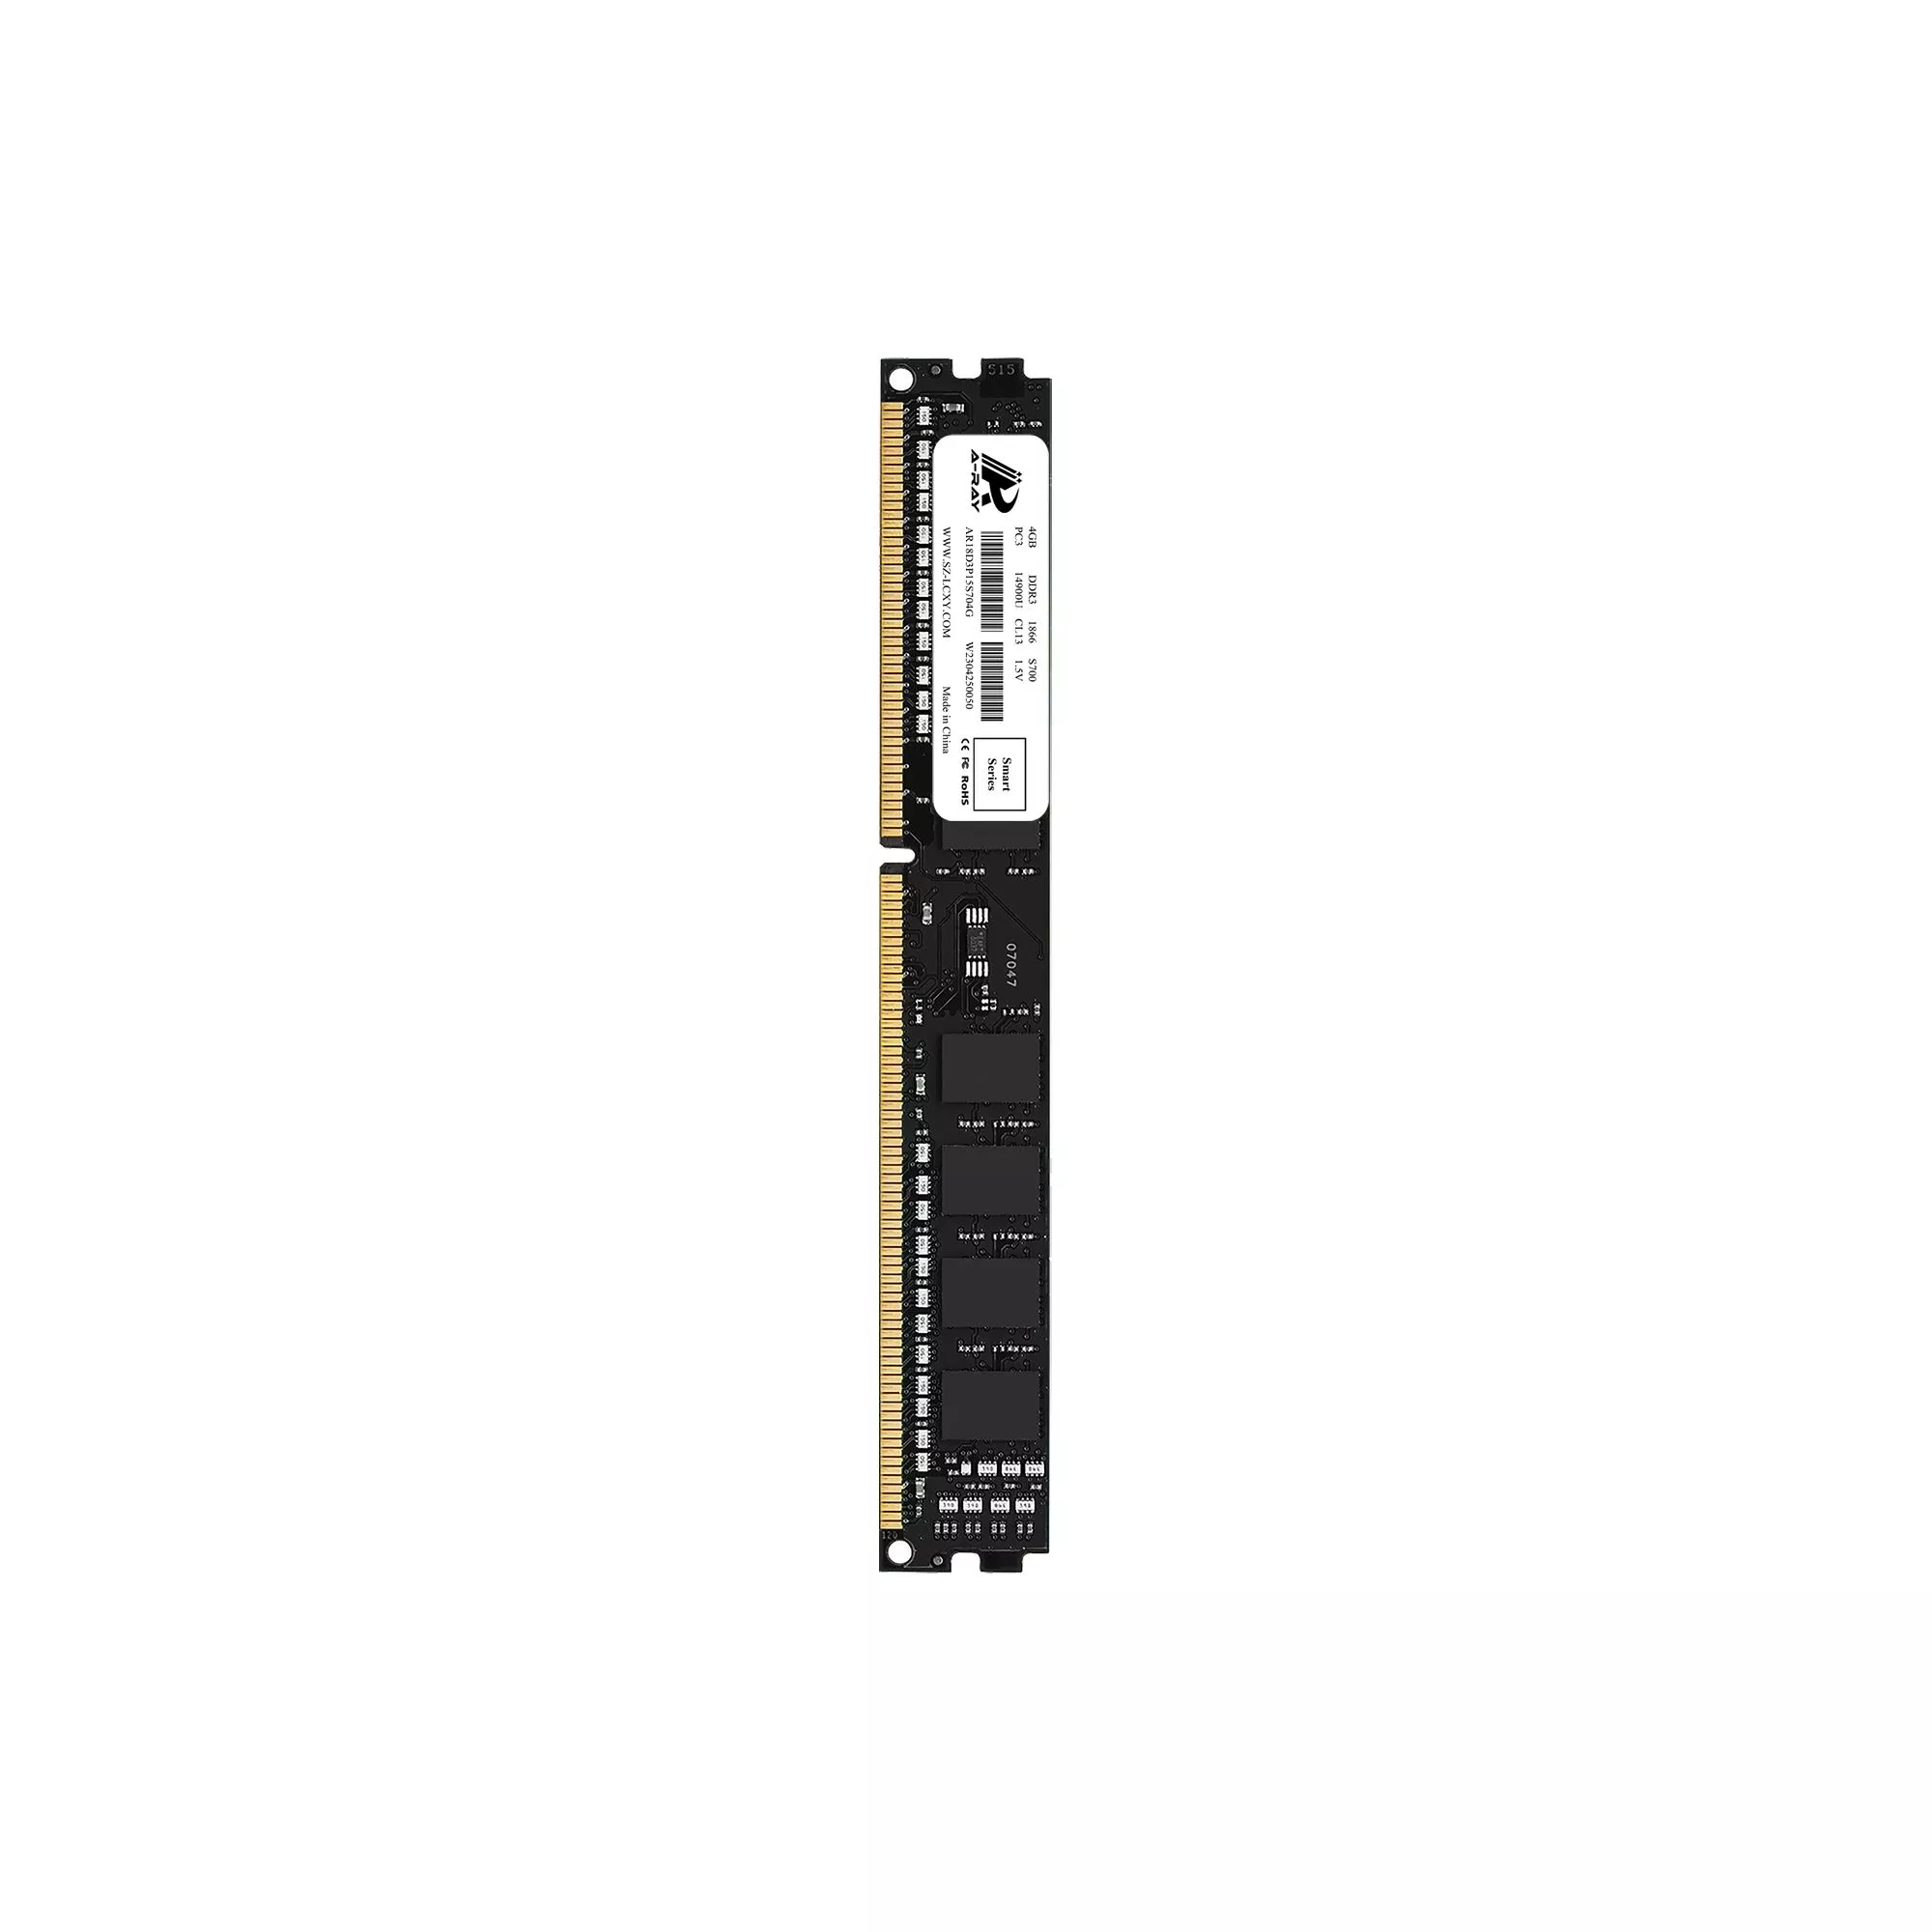 Ram A-Ray 4GB DDR3 Bus 1866 Mhz Desktop S700 14,928MB/s P/N: AR18D3P15S704G